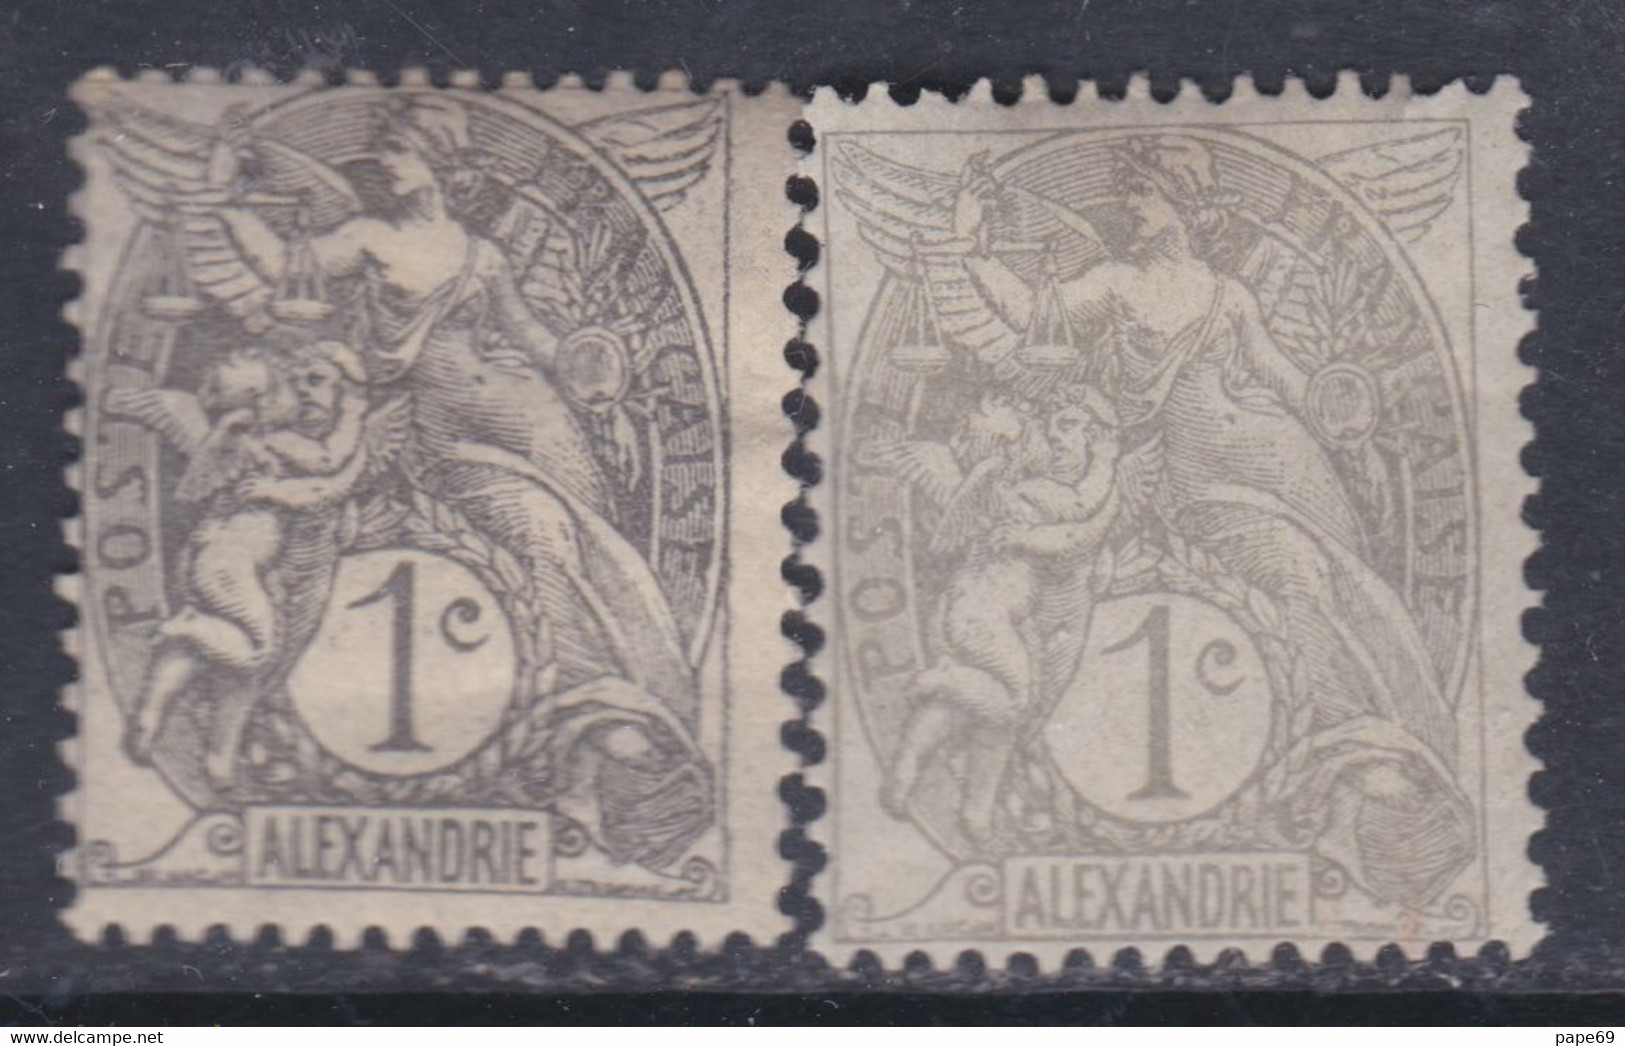 Alexandrie N° 19 / 19a X Type Blanc : Les 2 Nuances Du 1 C. Trace De Charnière Sinon TB - Neufs